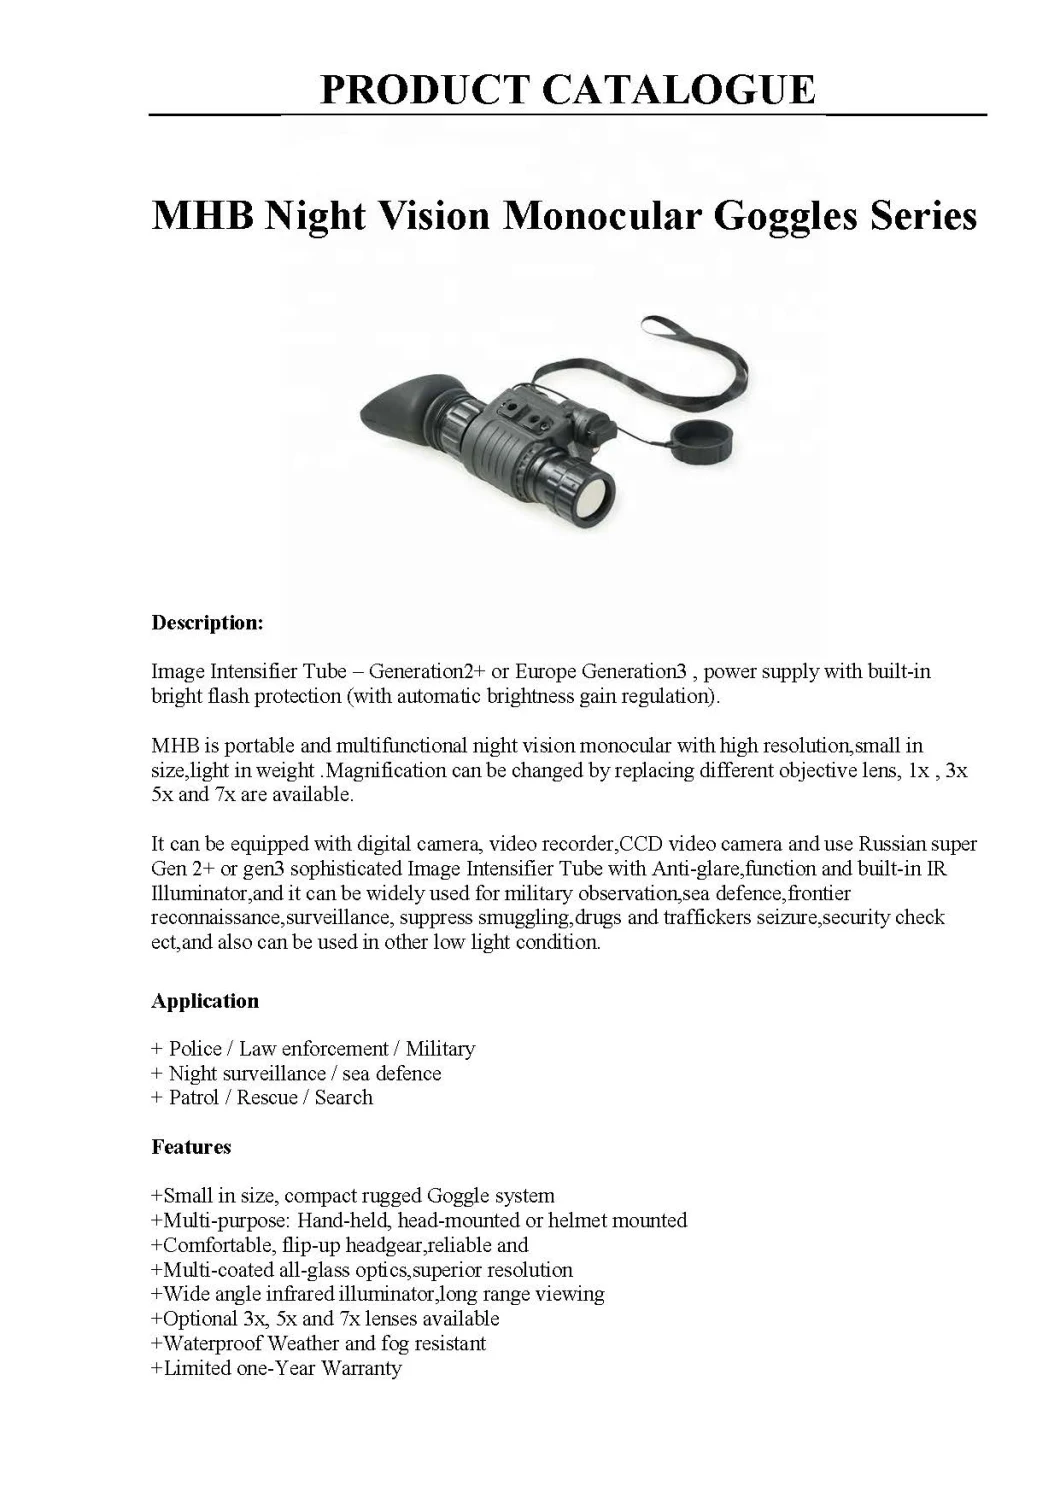 Night Vision Camera Goggles Series